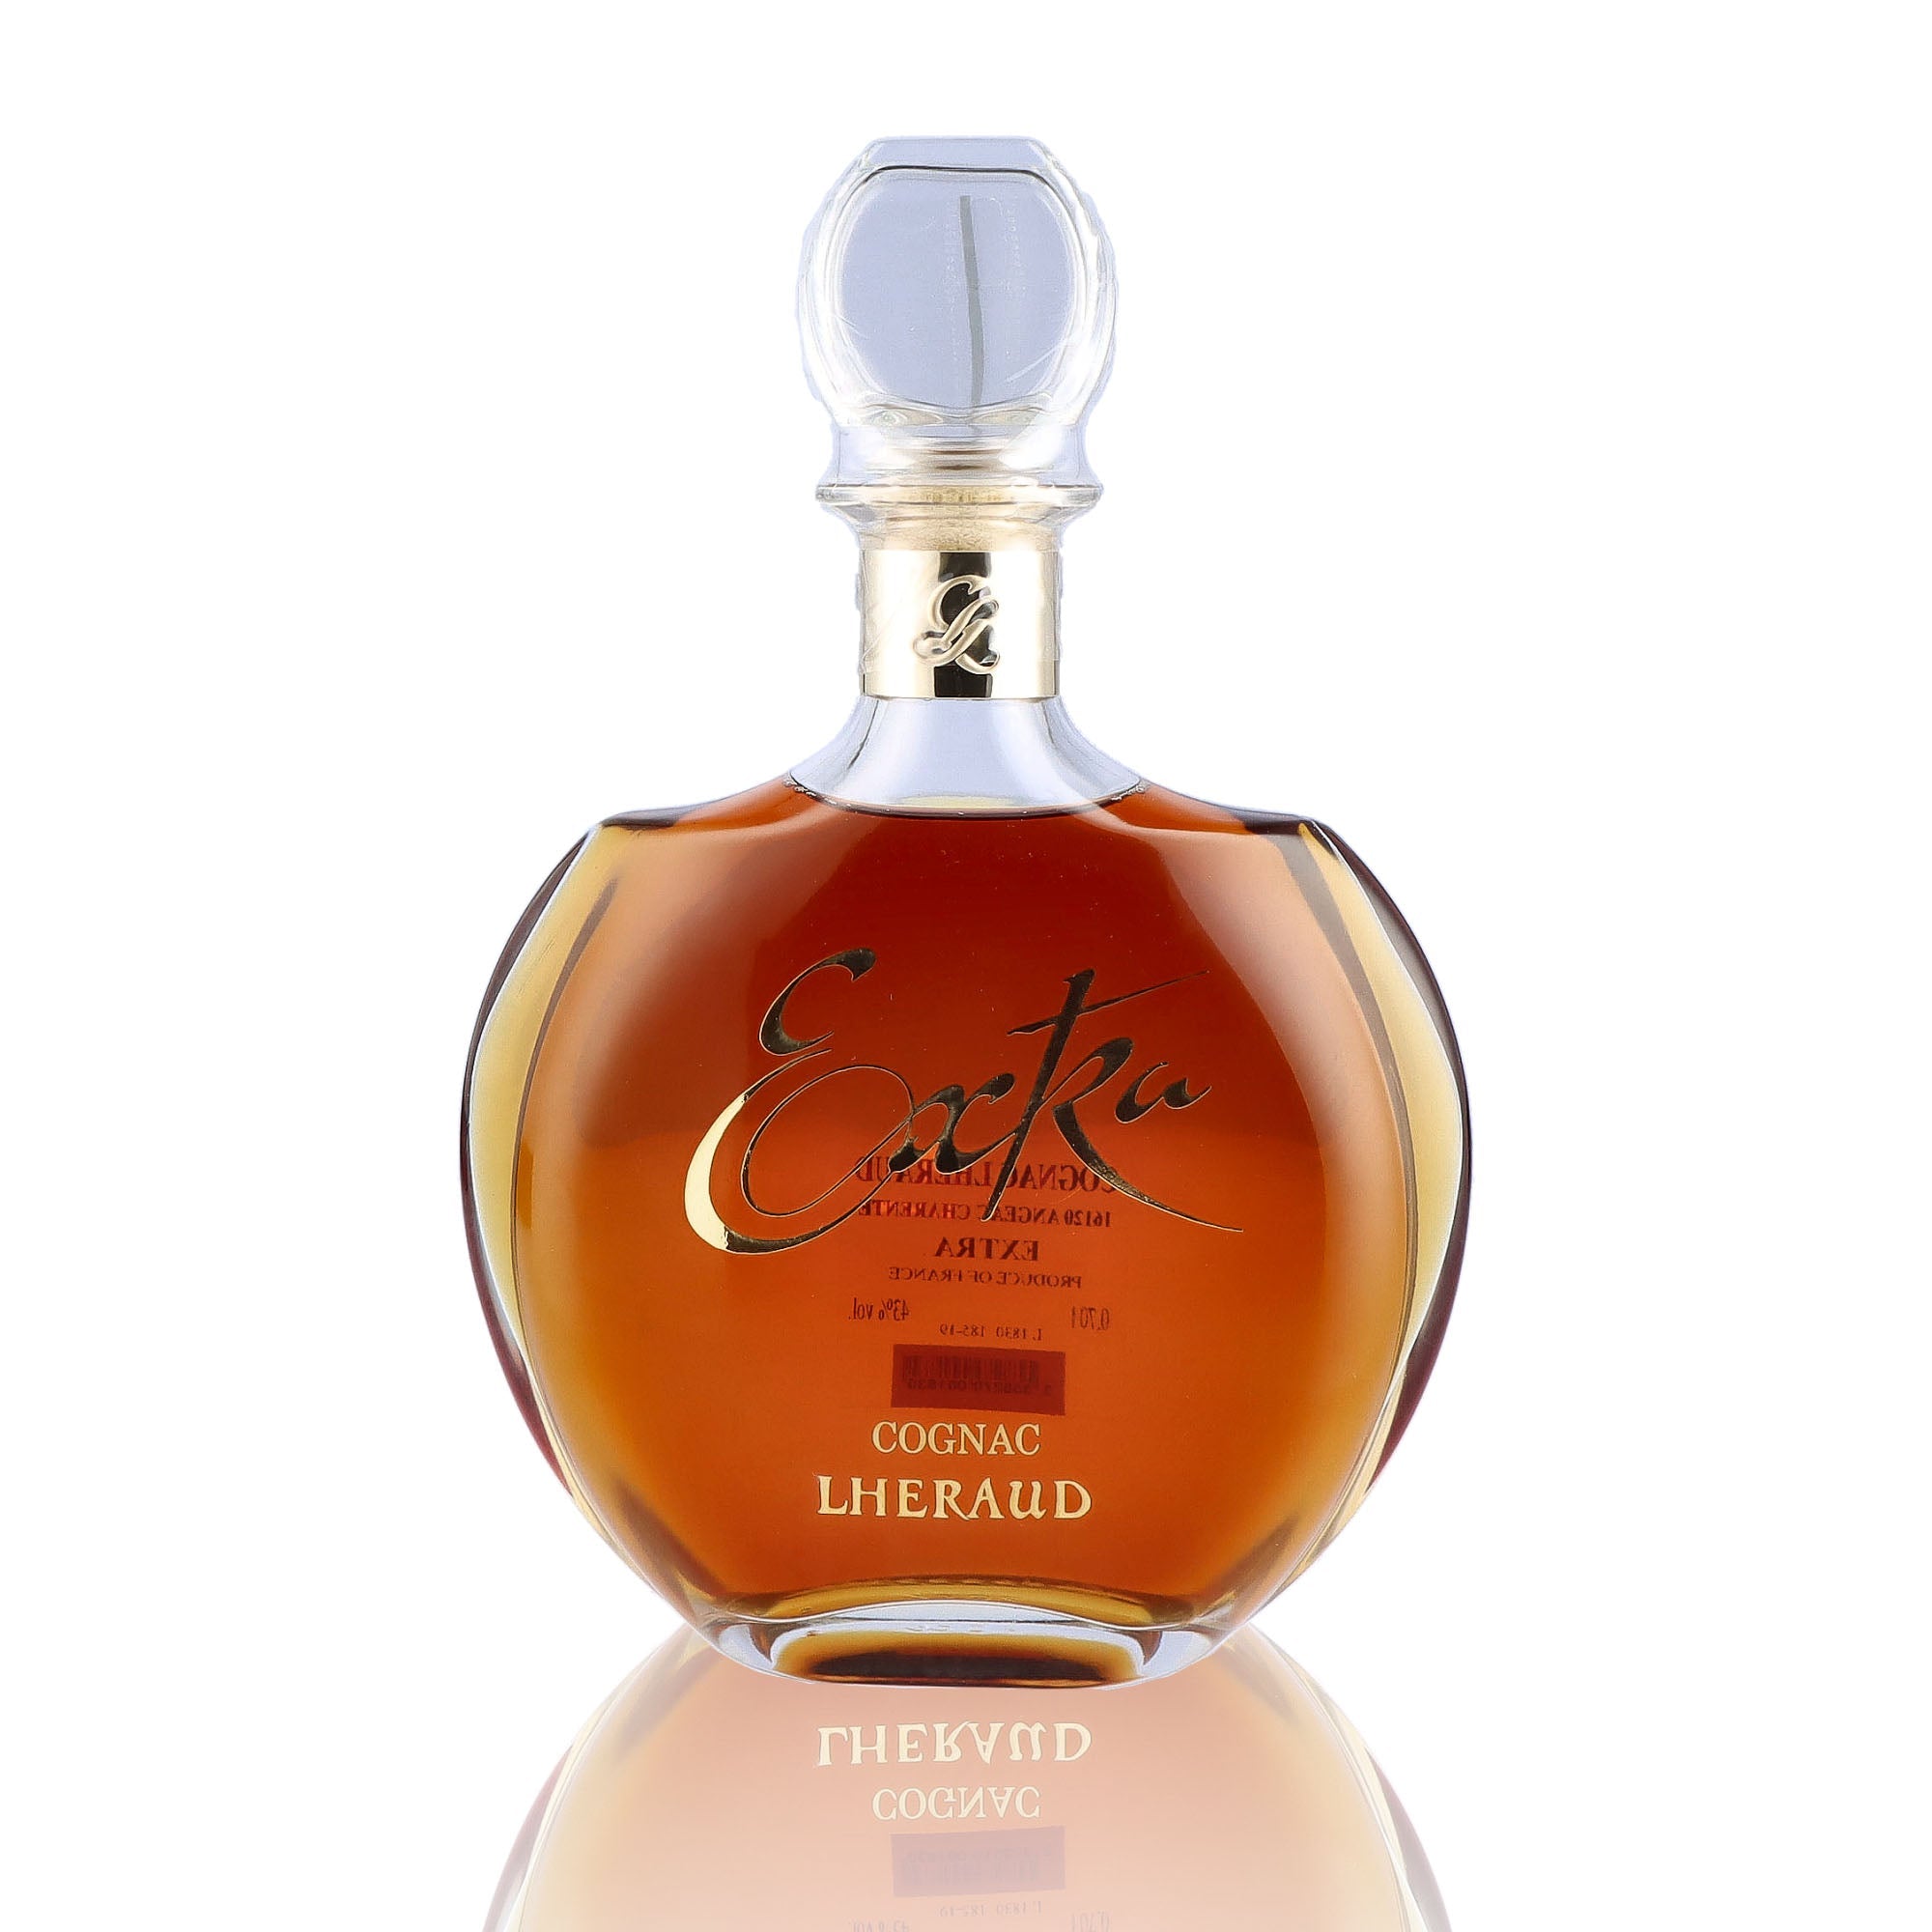 Une bouteille de Cognac, de la marque Lheraud, nommée Extra.